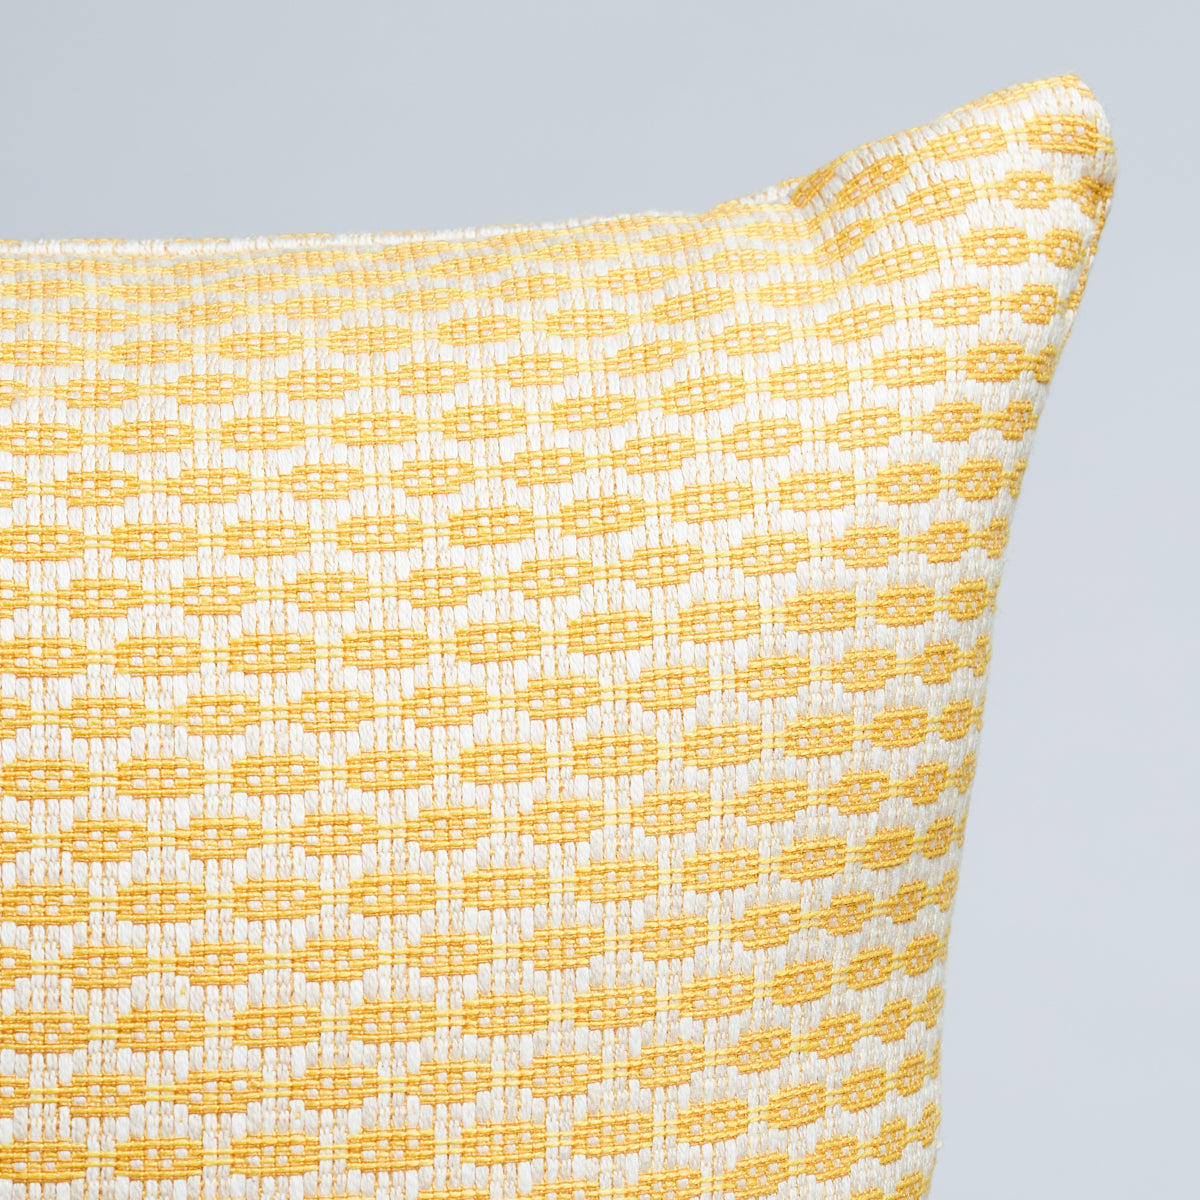 Hickox Indoor/Outdoor Pillow | Yellow